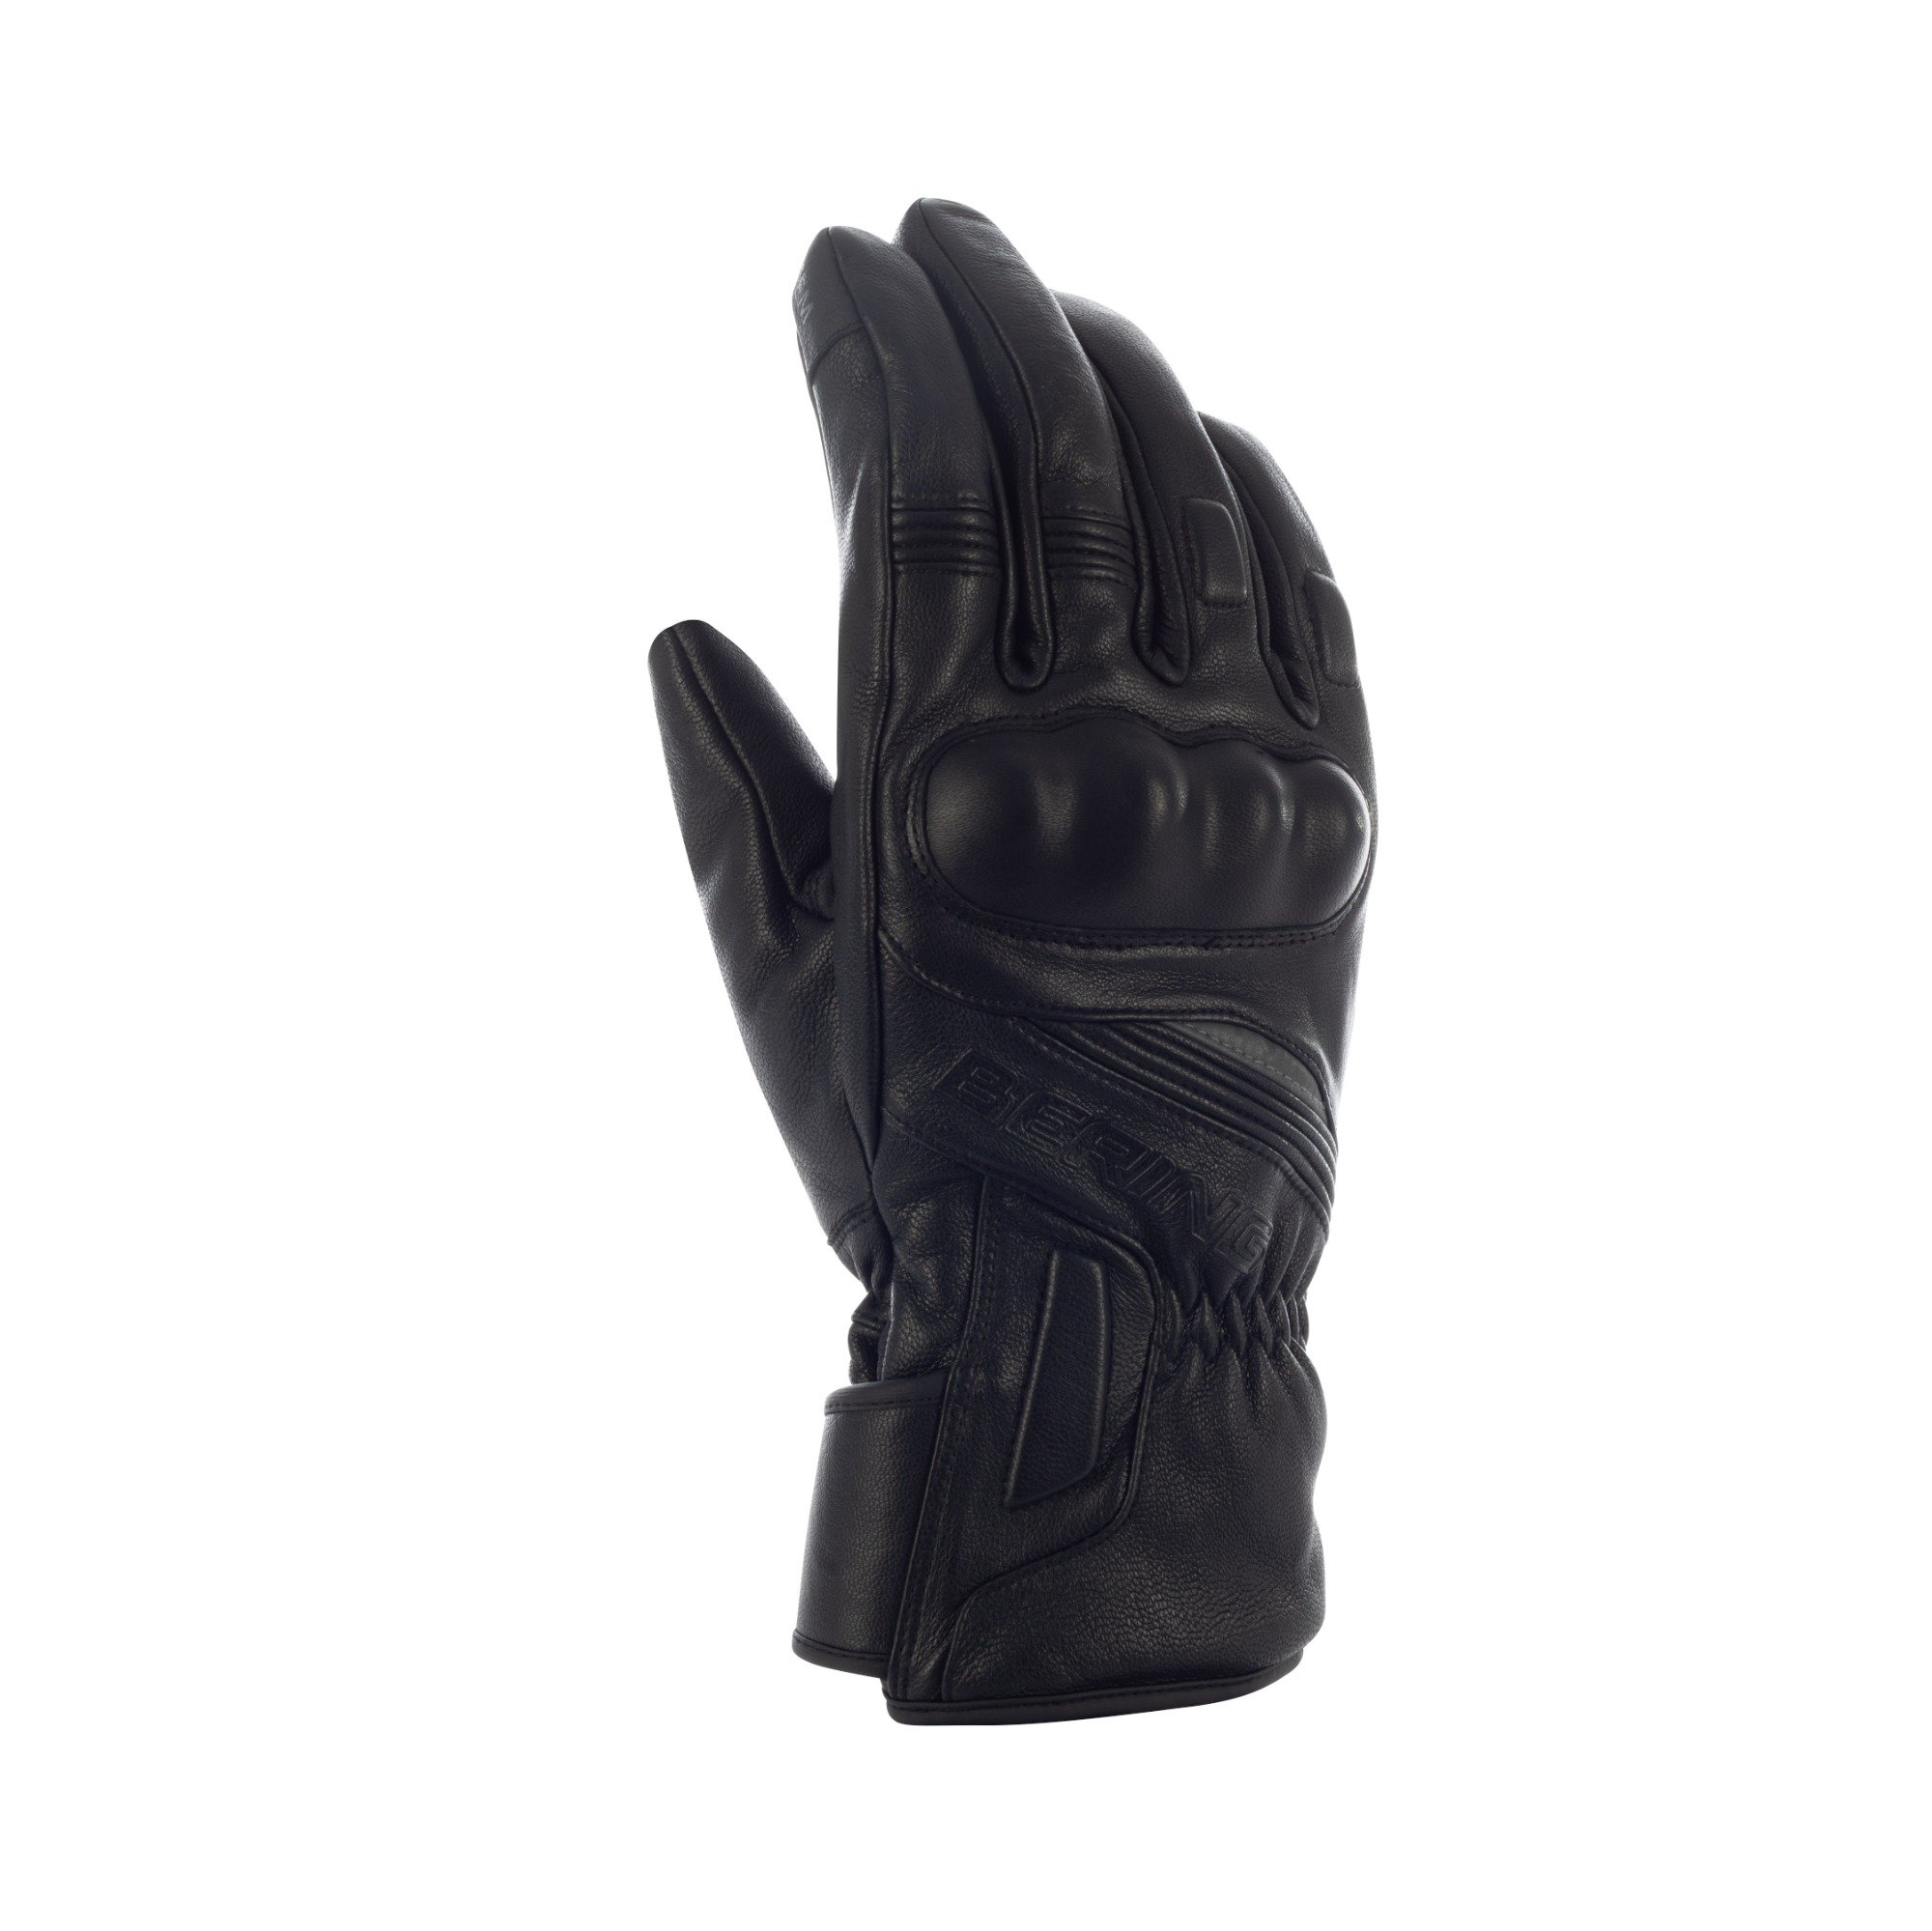 Image of Bering Stryker Gloves Black Size T13 EN